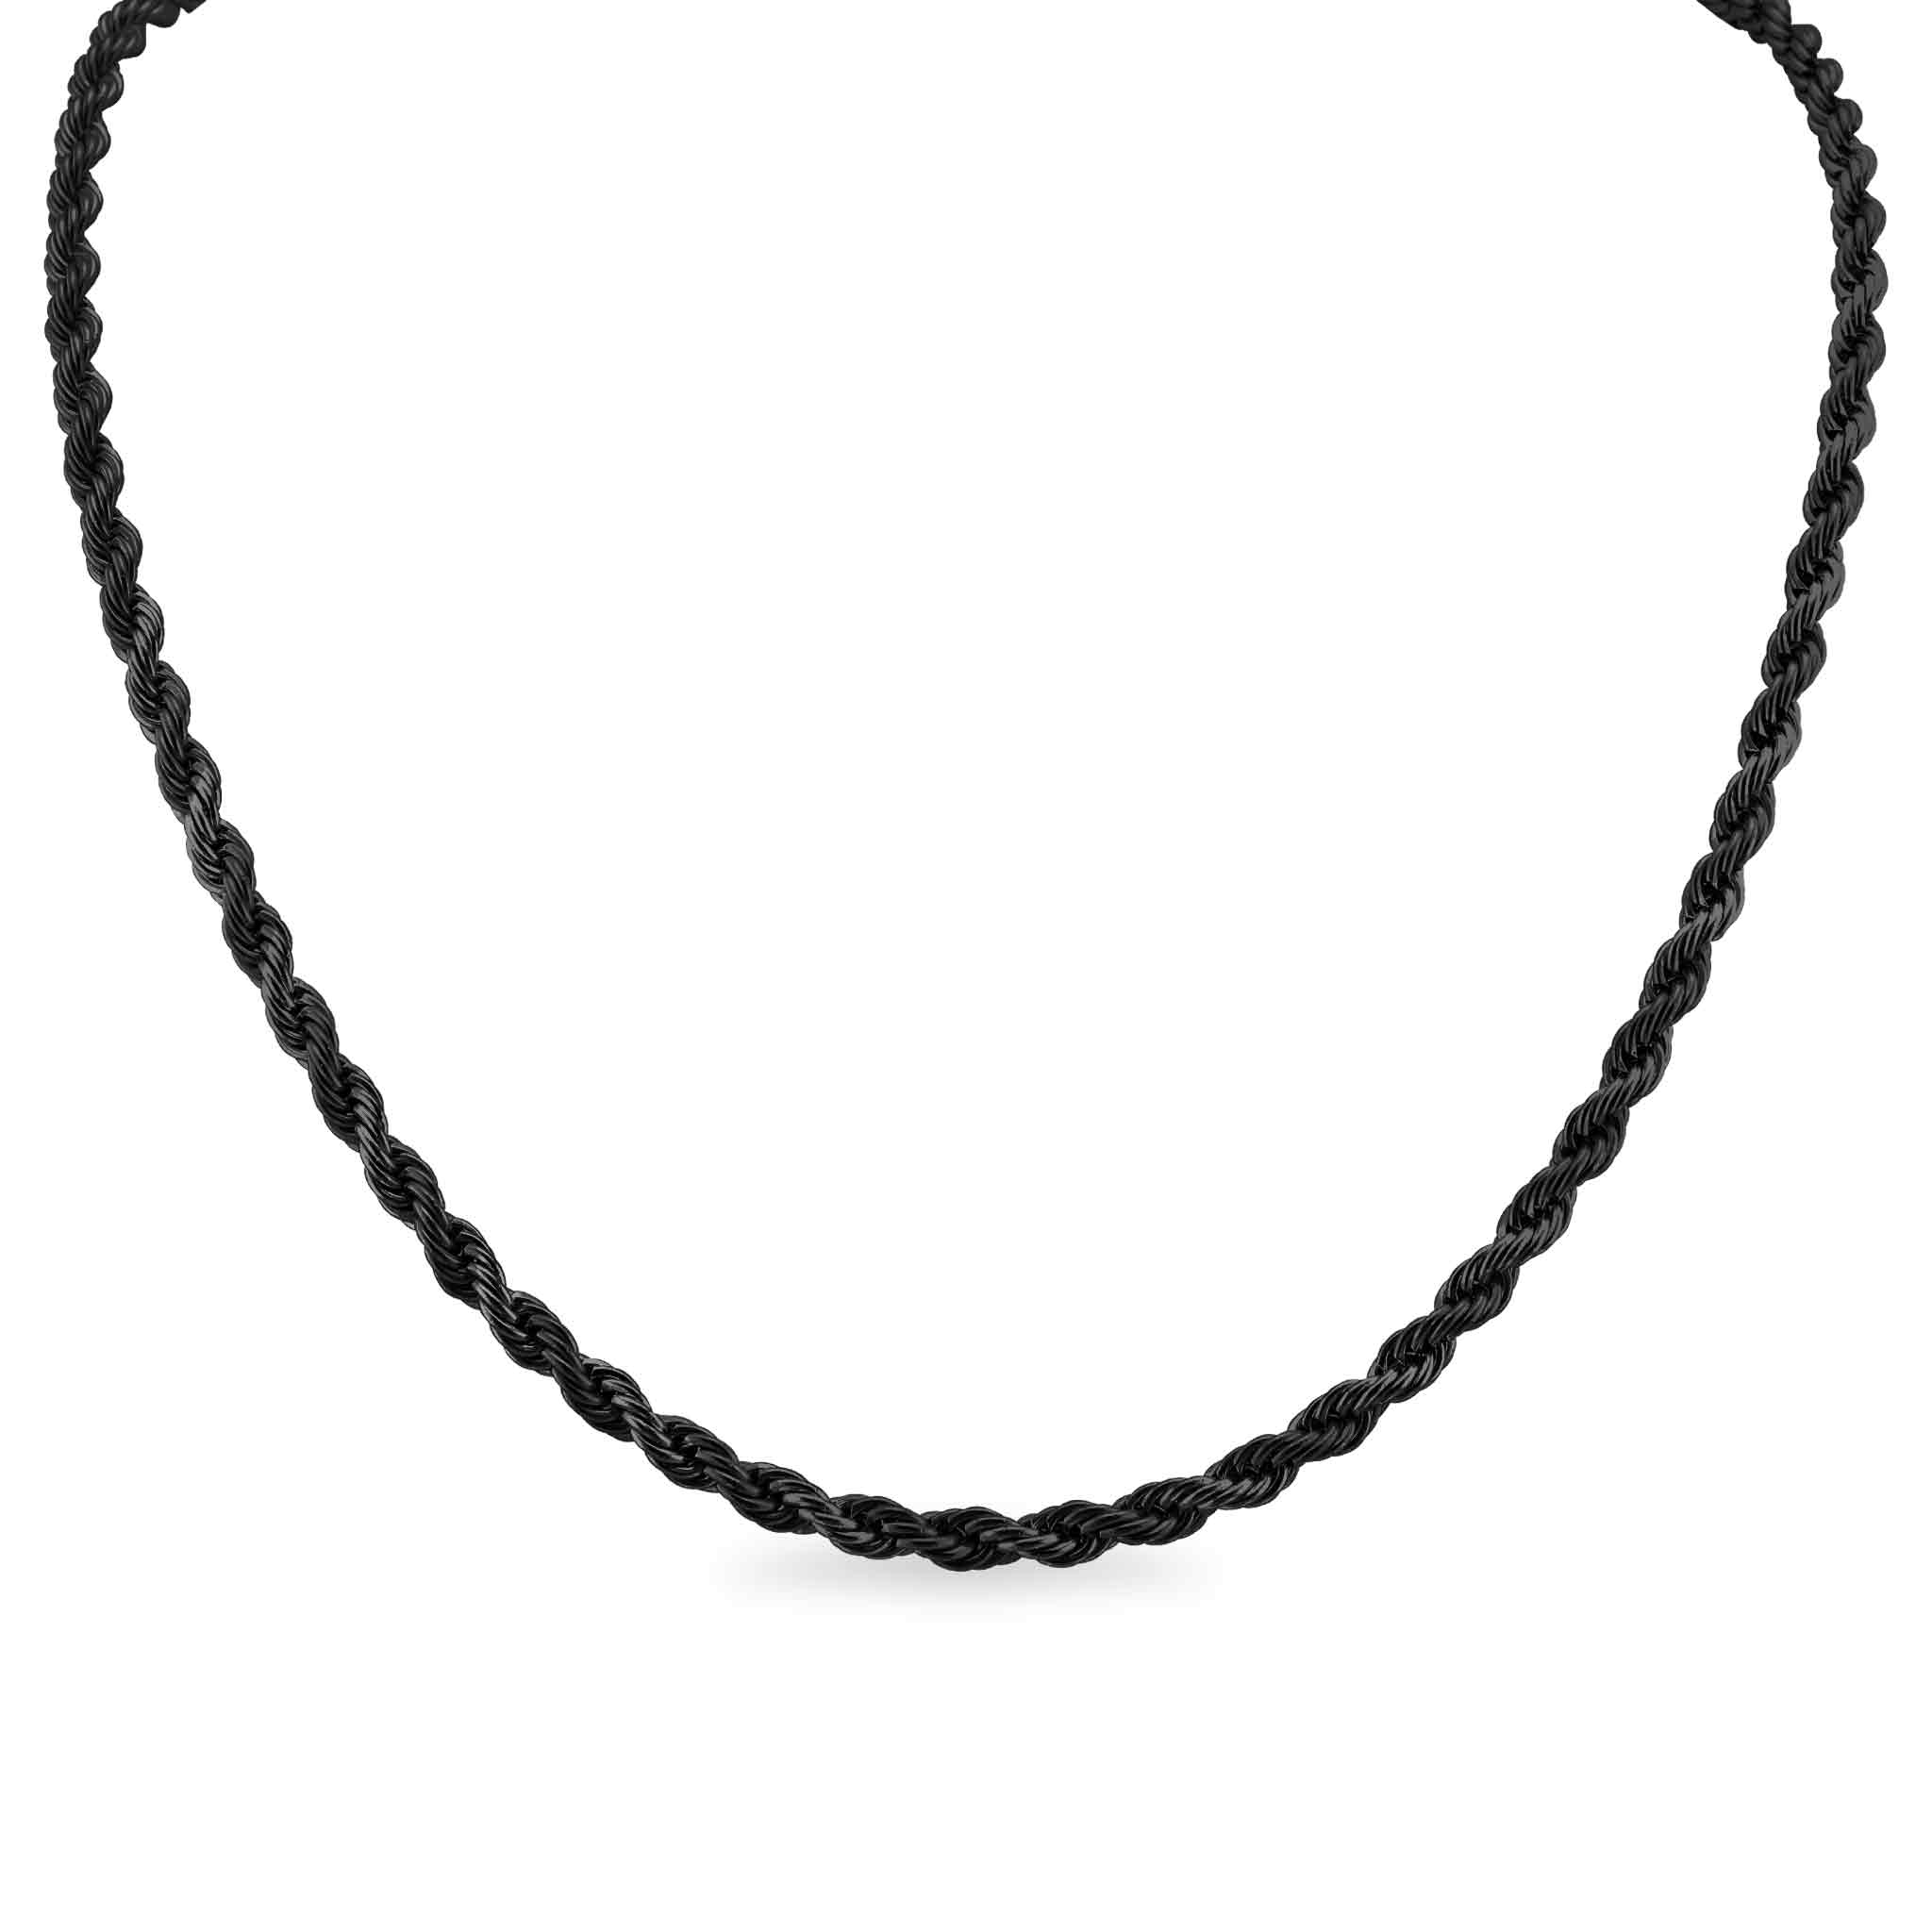 Mahi Evil Eye Unisex Necklace Pendant with Black Rope